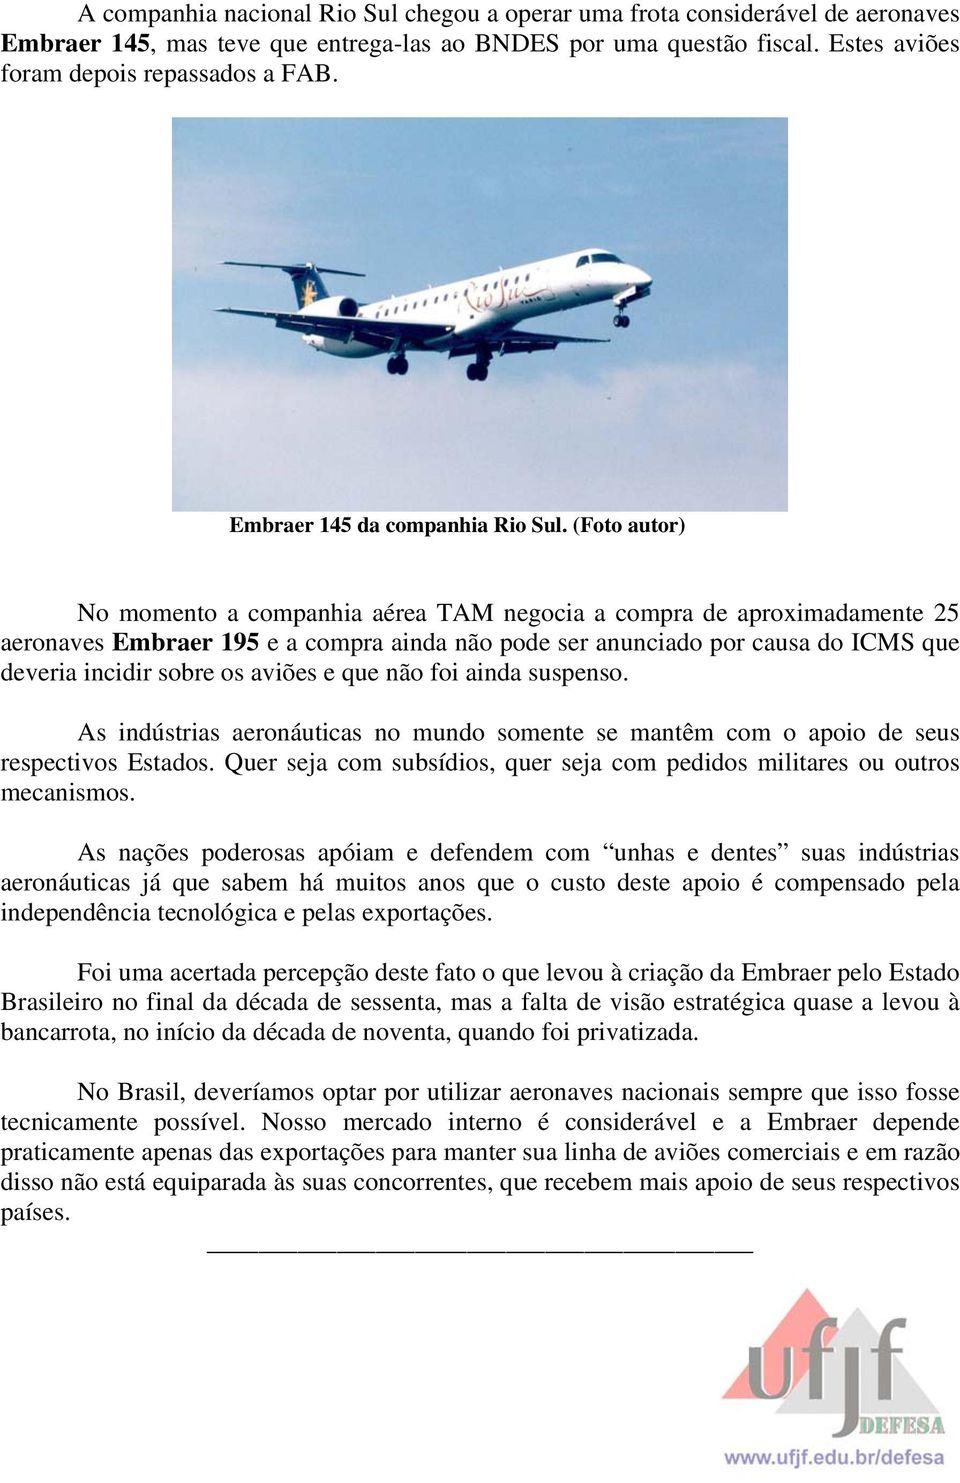 (Foto autor) No momento a companhia aérea TAM negocia a compra de aproximadamente 25 aeronaves Embraer 195 e a compra ainda não pode ser anunciado por causa do ICMS que deveria incidir sobre os